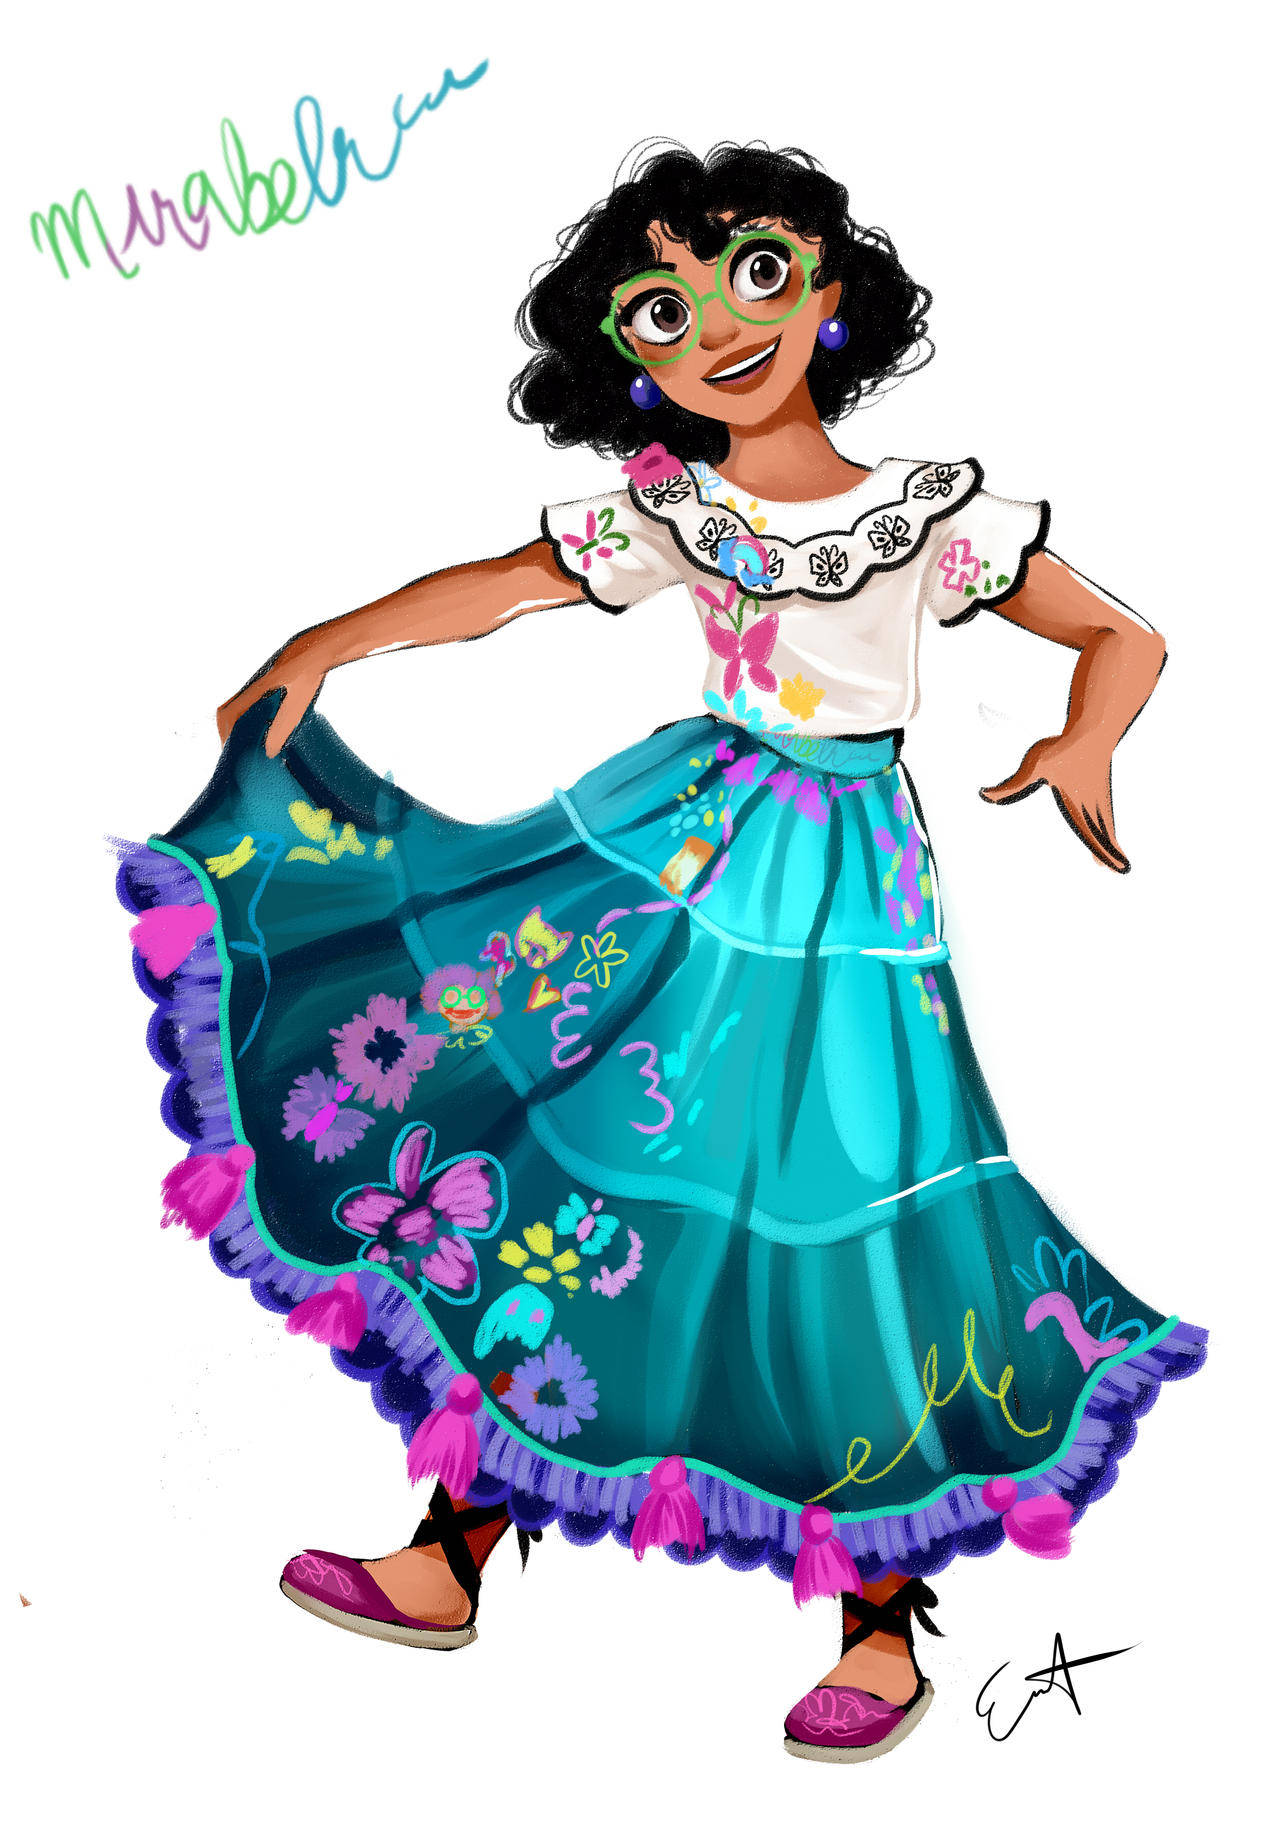 Encanto's Mirabel Madrigal In Her Vibrant Skirt Background